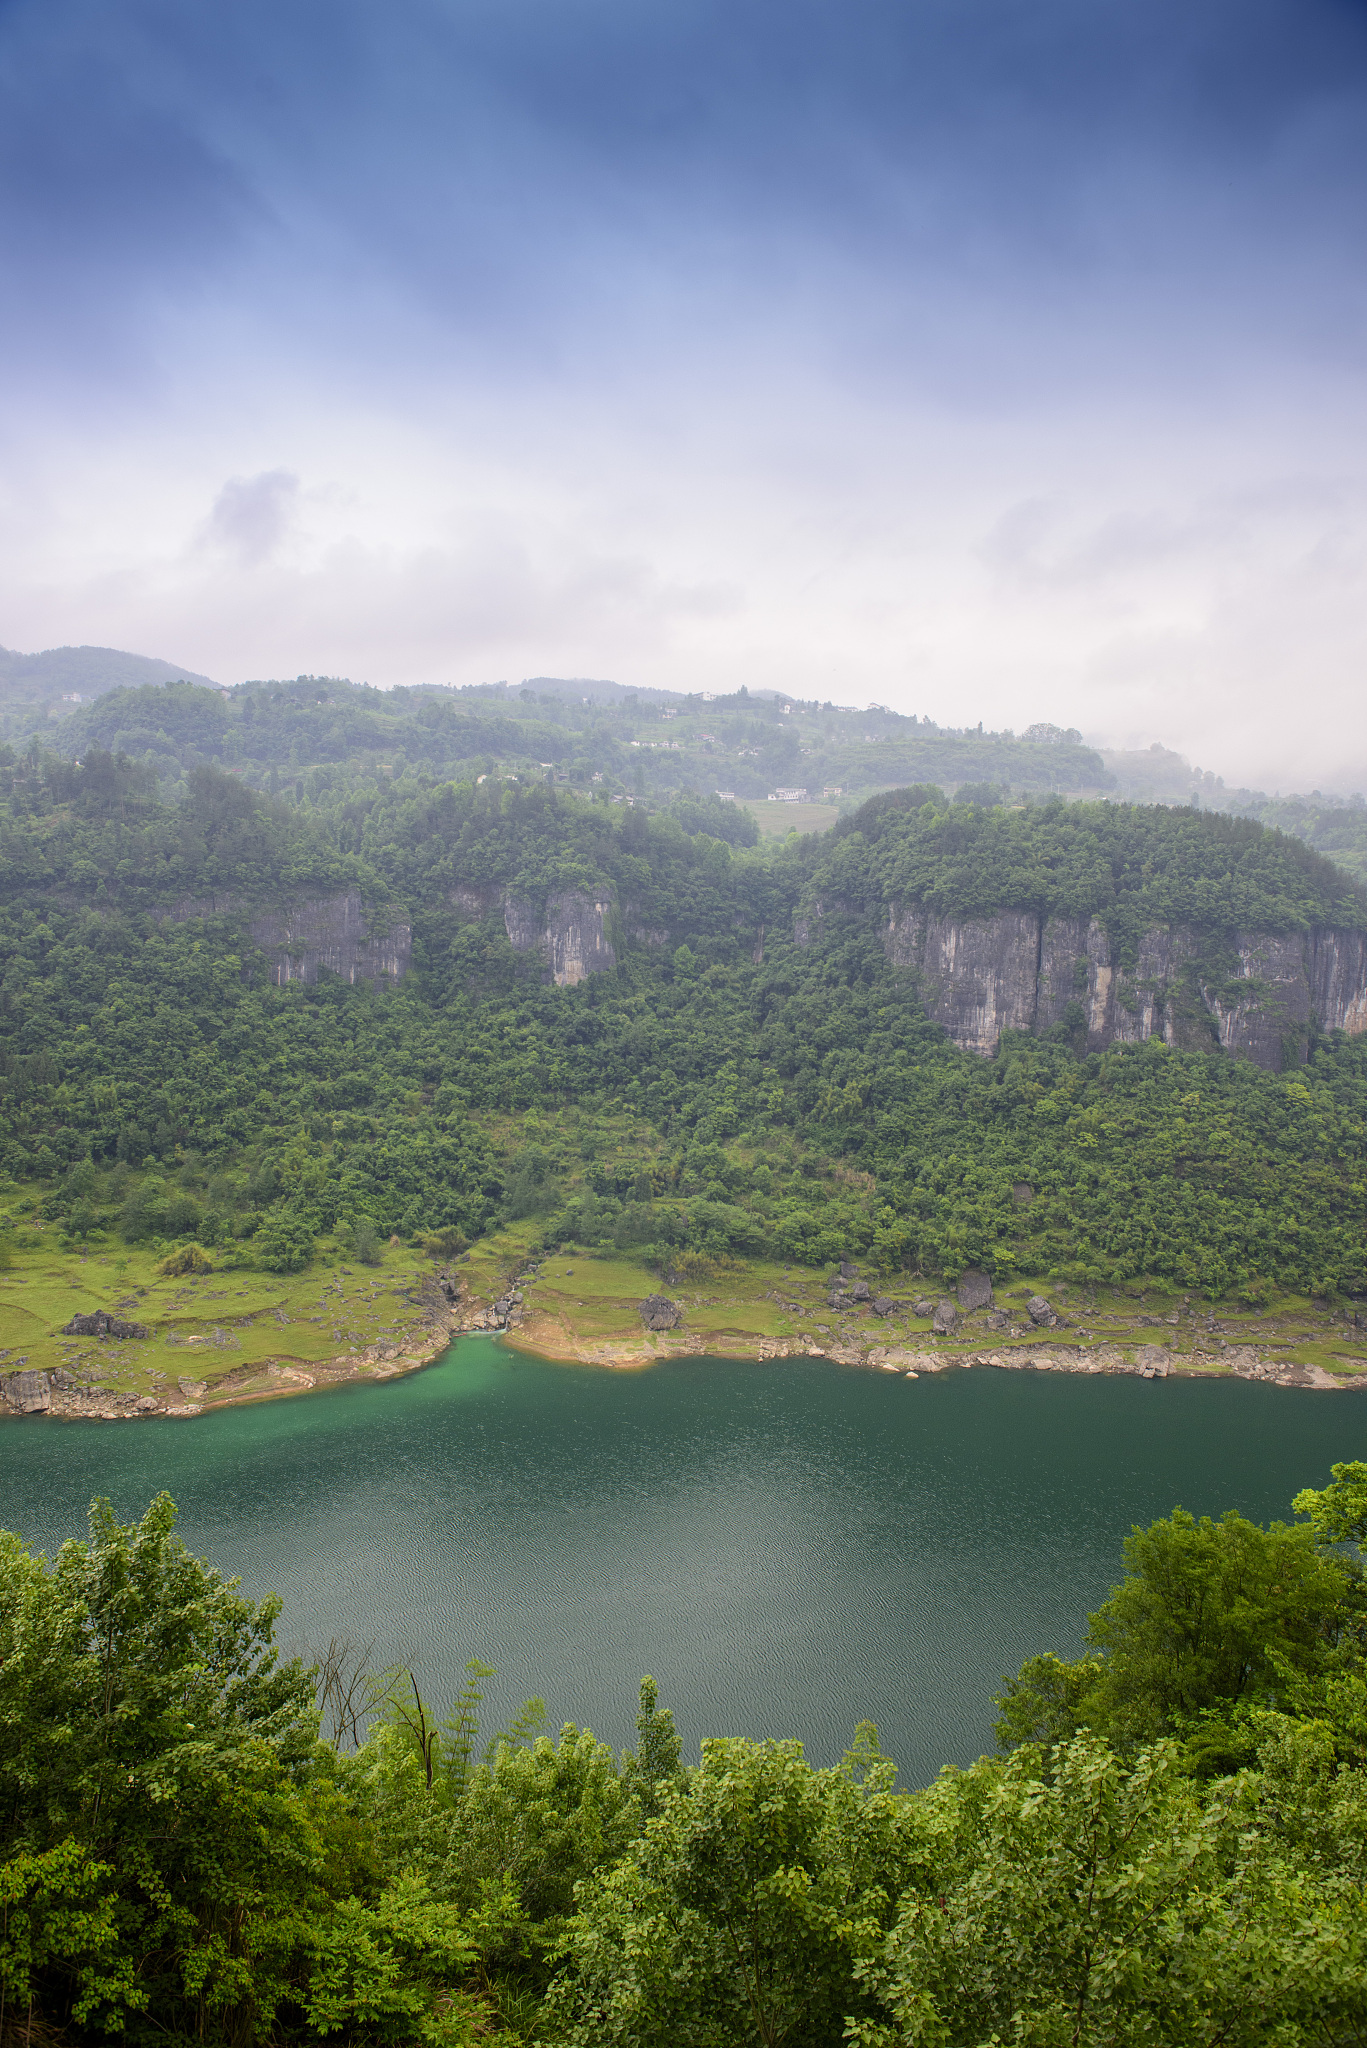 仙境之旅:登上仙女岛,探寻武隆仙女湖的神秘庙宇与美丽风景